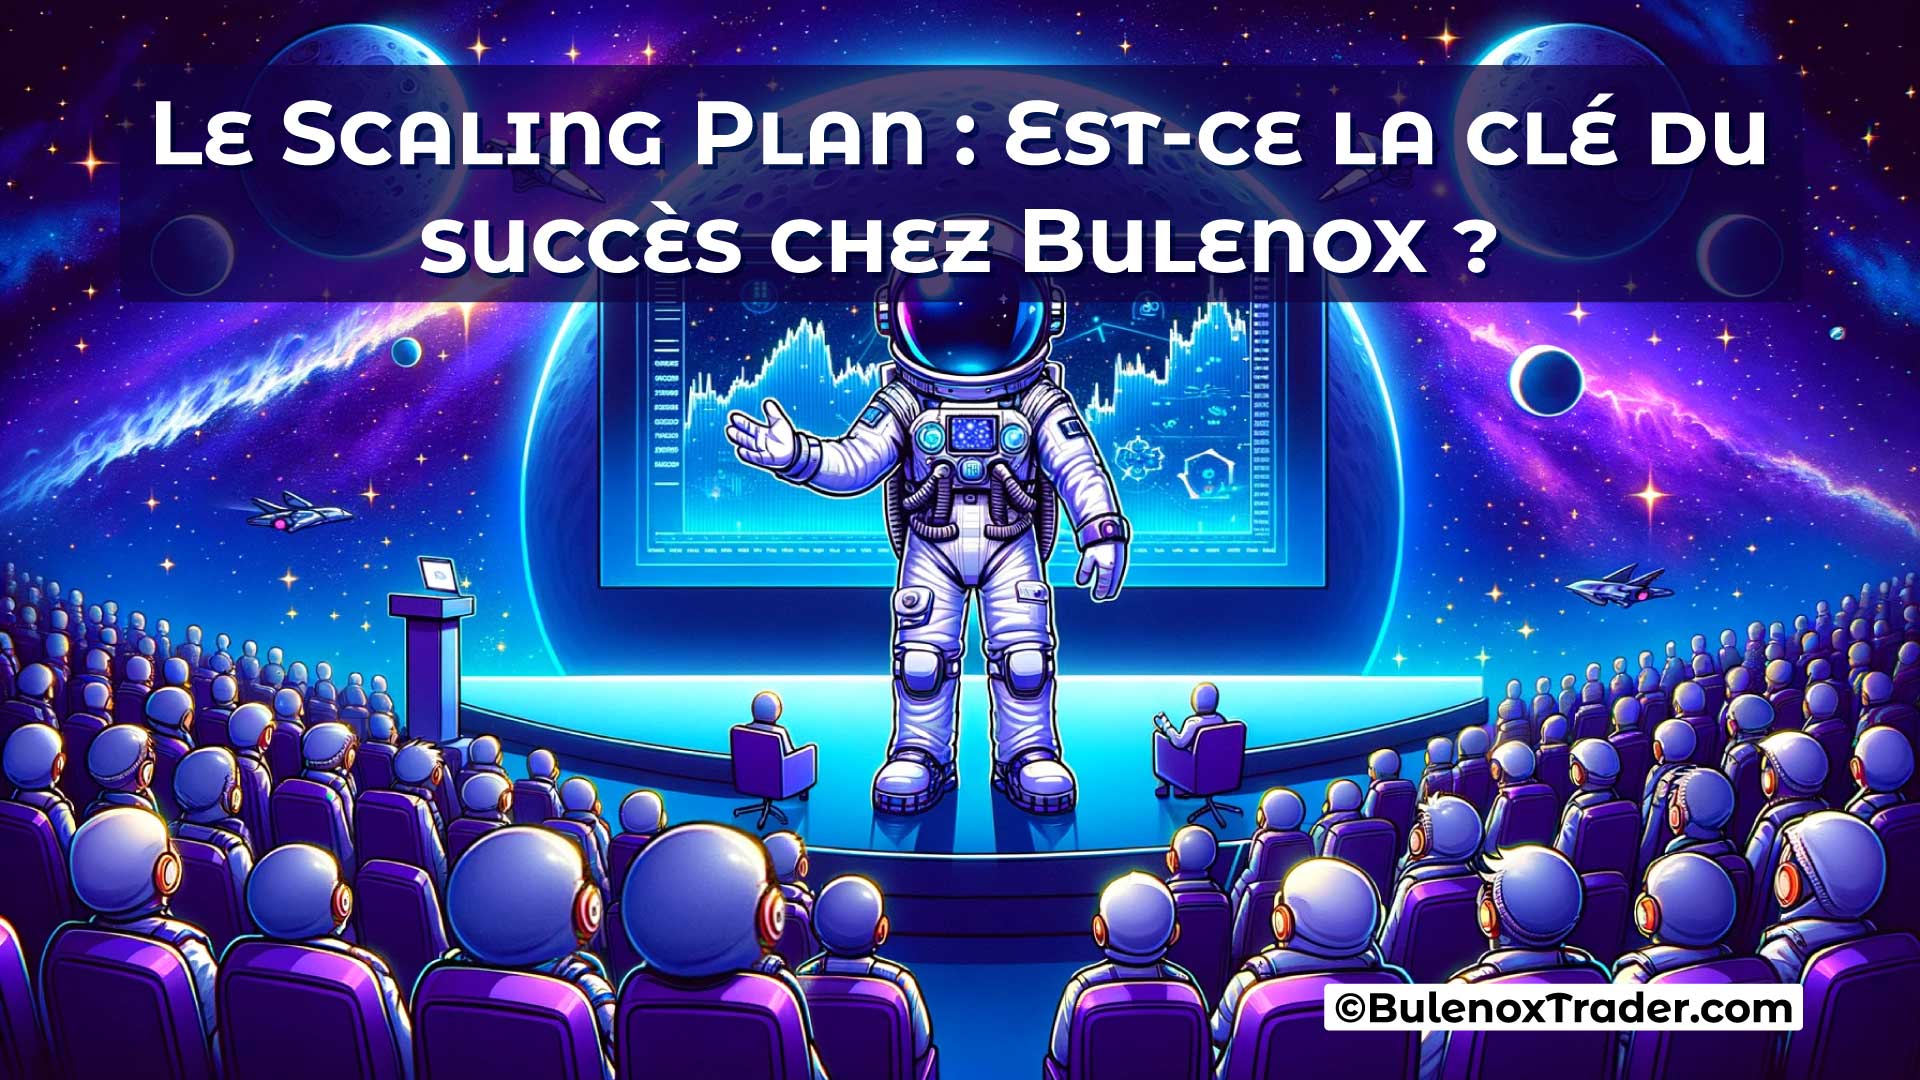 Le-Scaling-Plan-Est-ce-la-clé-du-succès-chez-Bulenox-on-Bulenox-Trader-Website